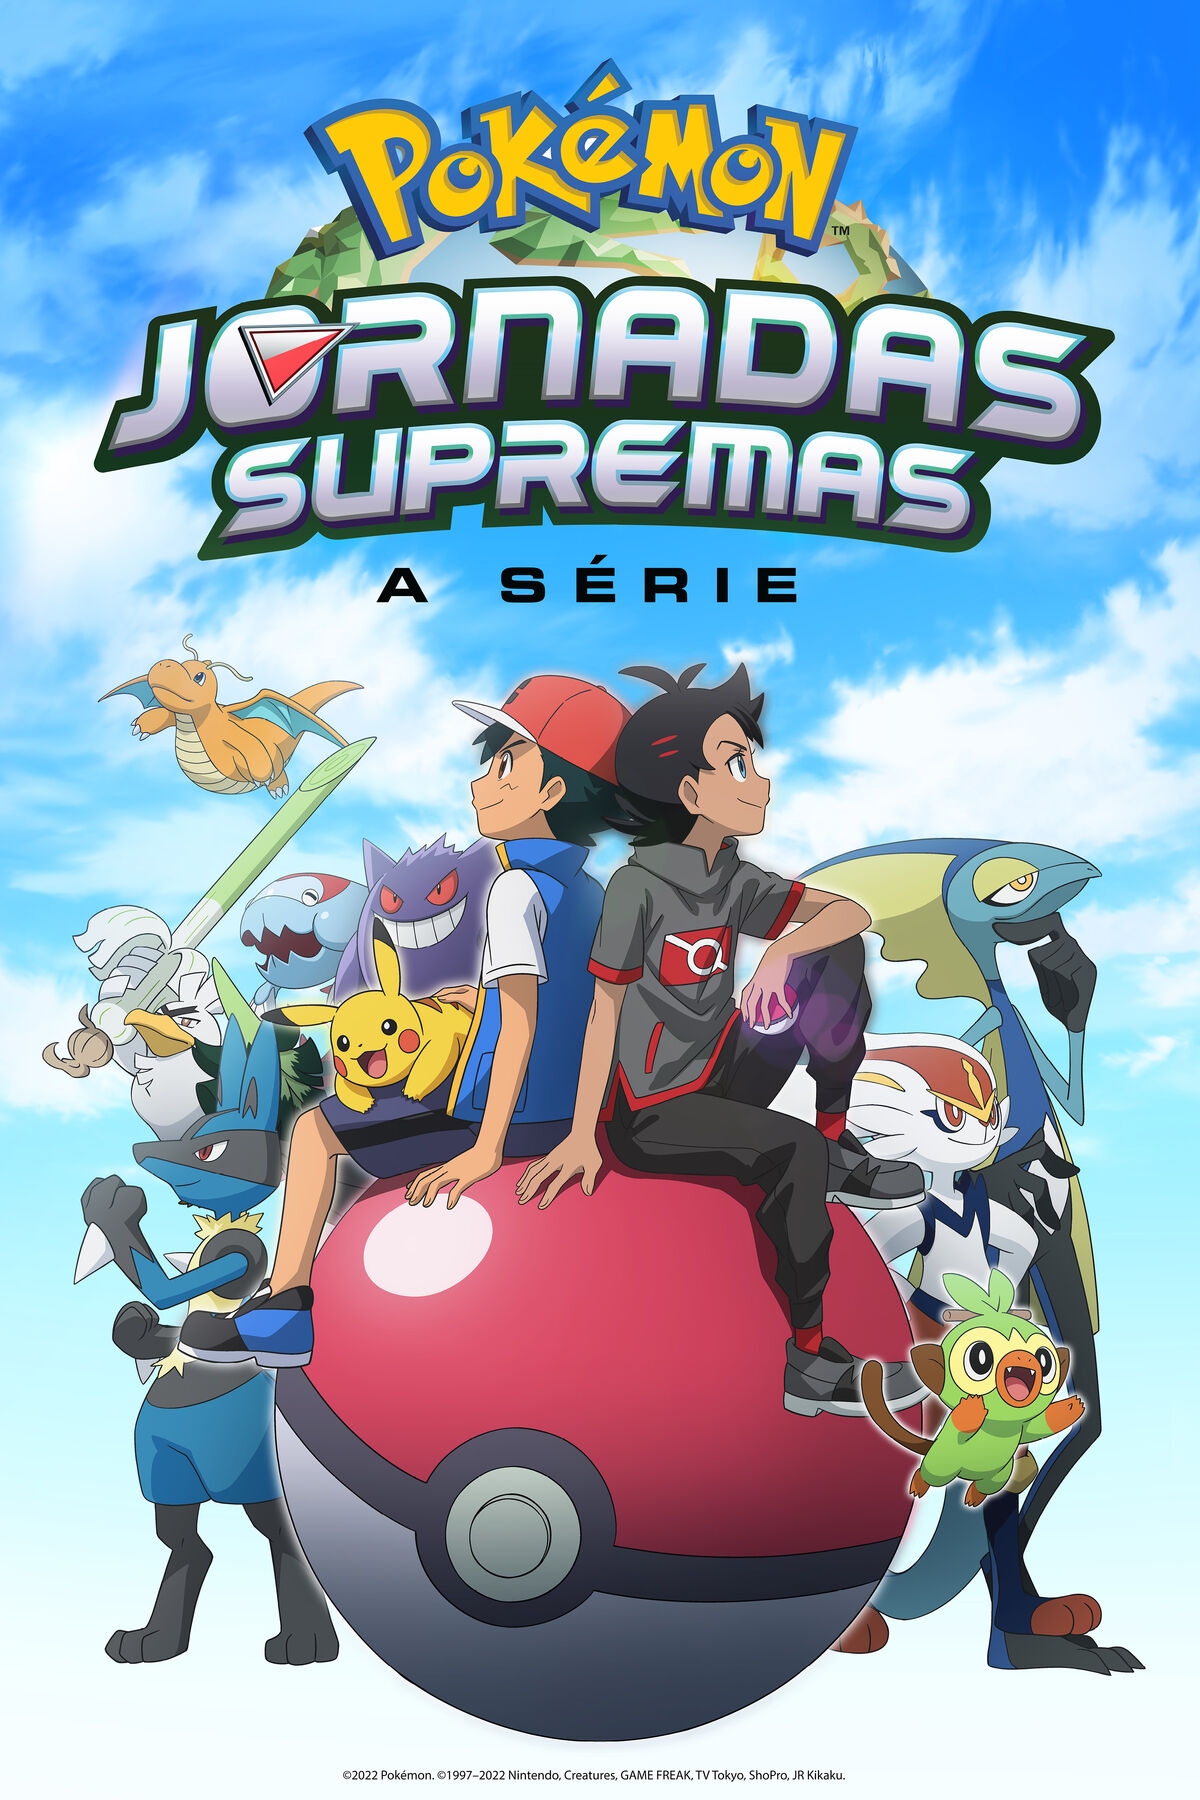 Pokémon, o Filme: Preto - Victini e Reshiram, Wiki Dobragens Portuguesas